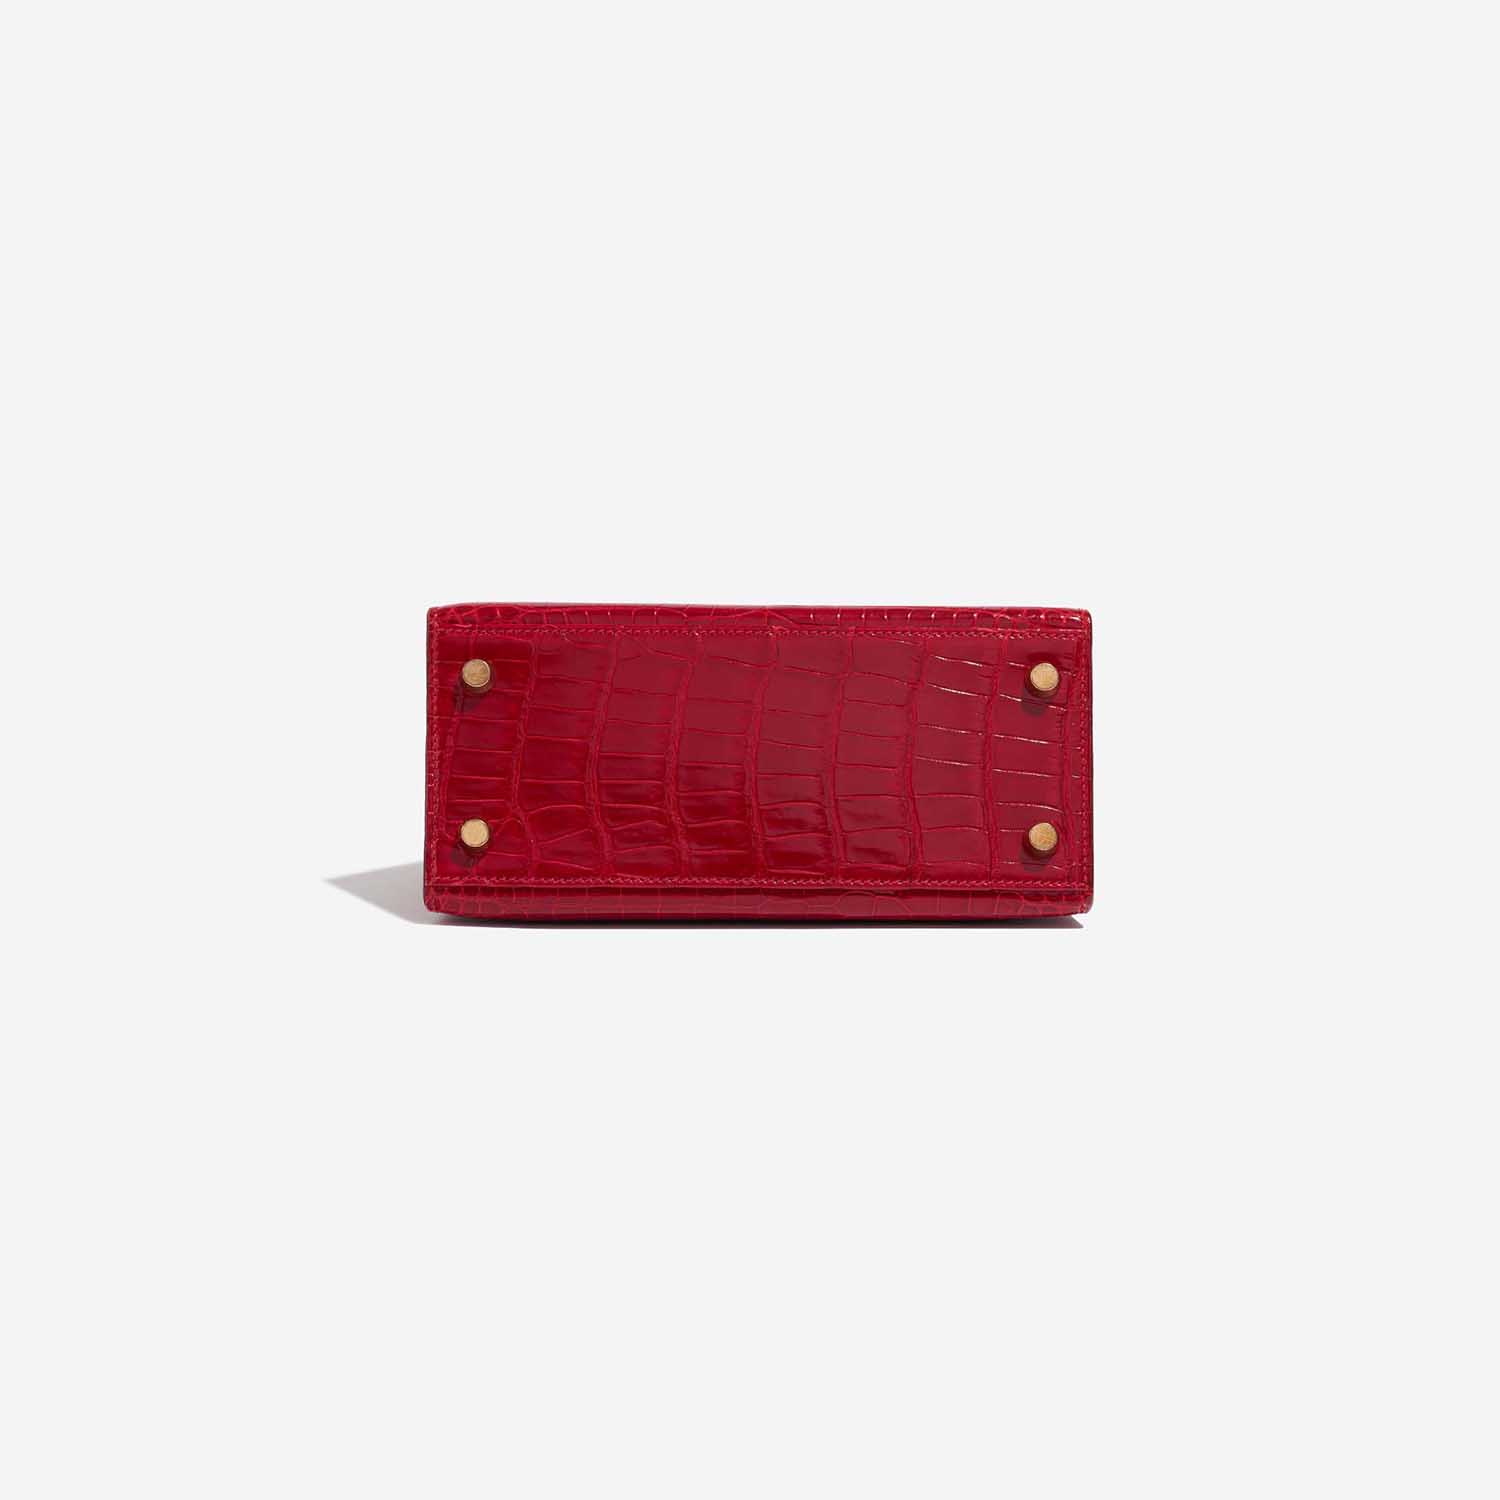 Gebrauchte Hermès Tasche Kelly Mini Porosus Crocodile Braise Red Bottom | Verkaufen Sie Ihre Designer-Tasche auf Saclab.com